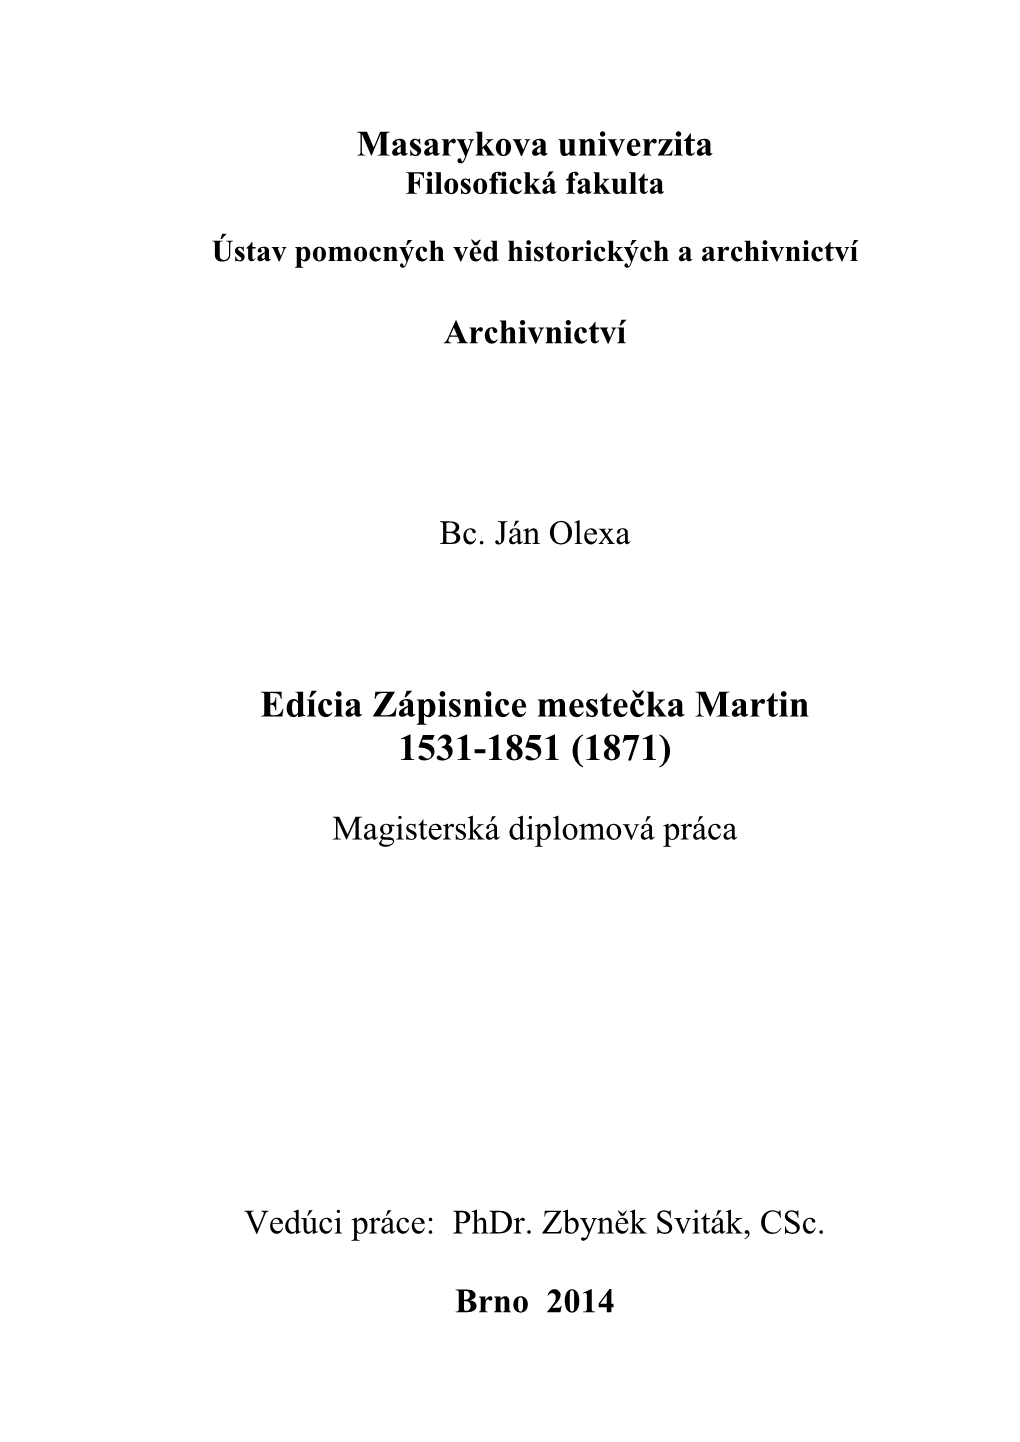 Edícia Zápisnice Mestečka Martin 1531-1851 (1871)